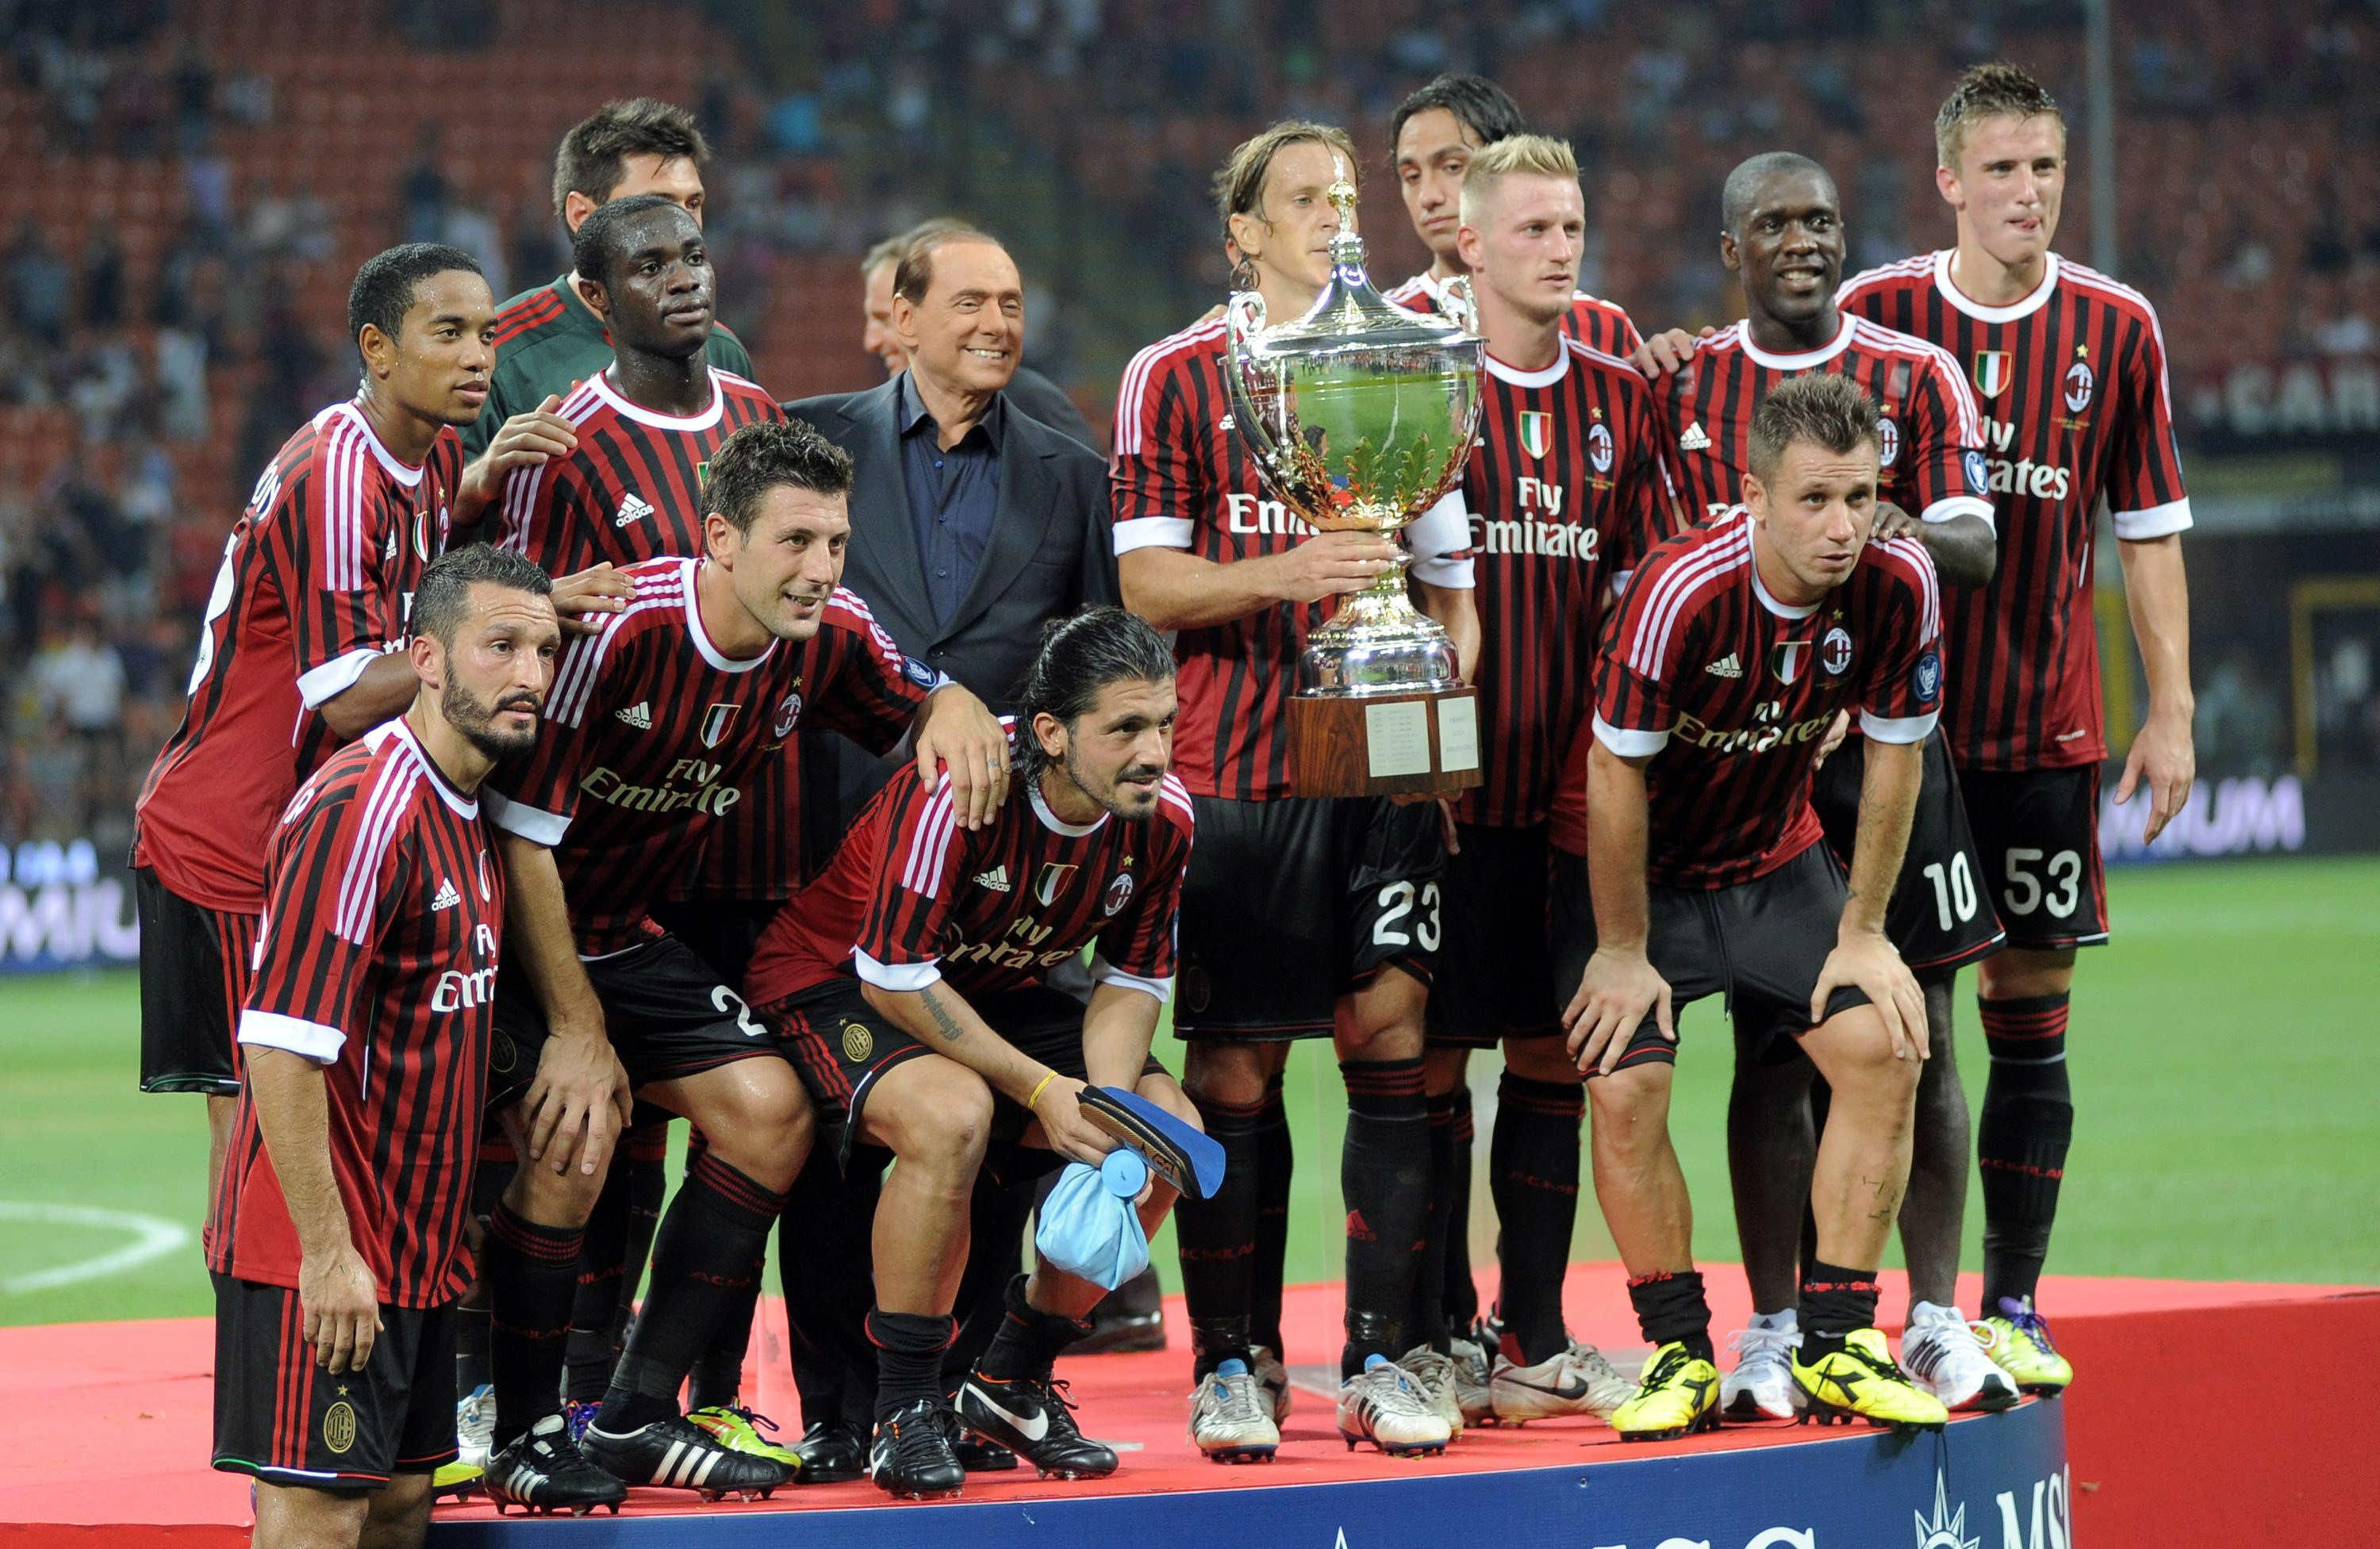 Il patron festeggia con la squadra un successo nel trofeo Berlusconi